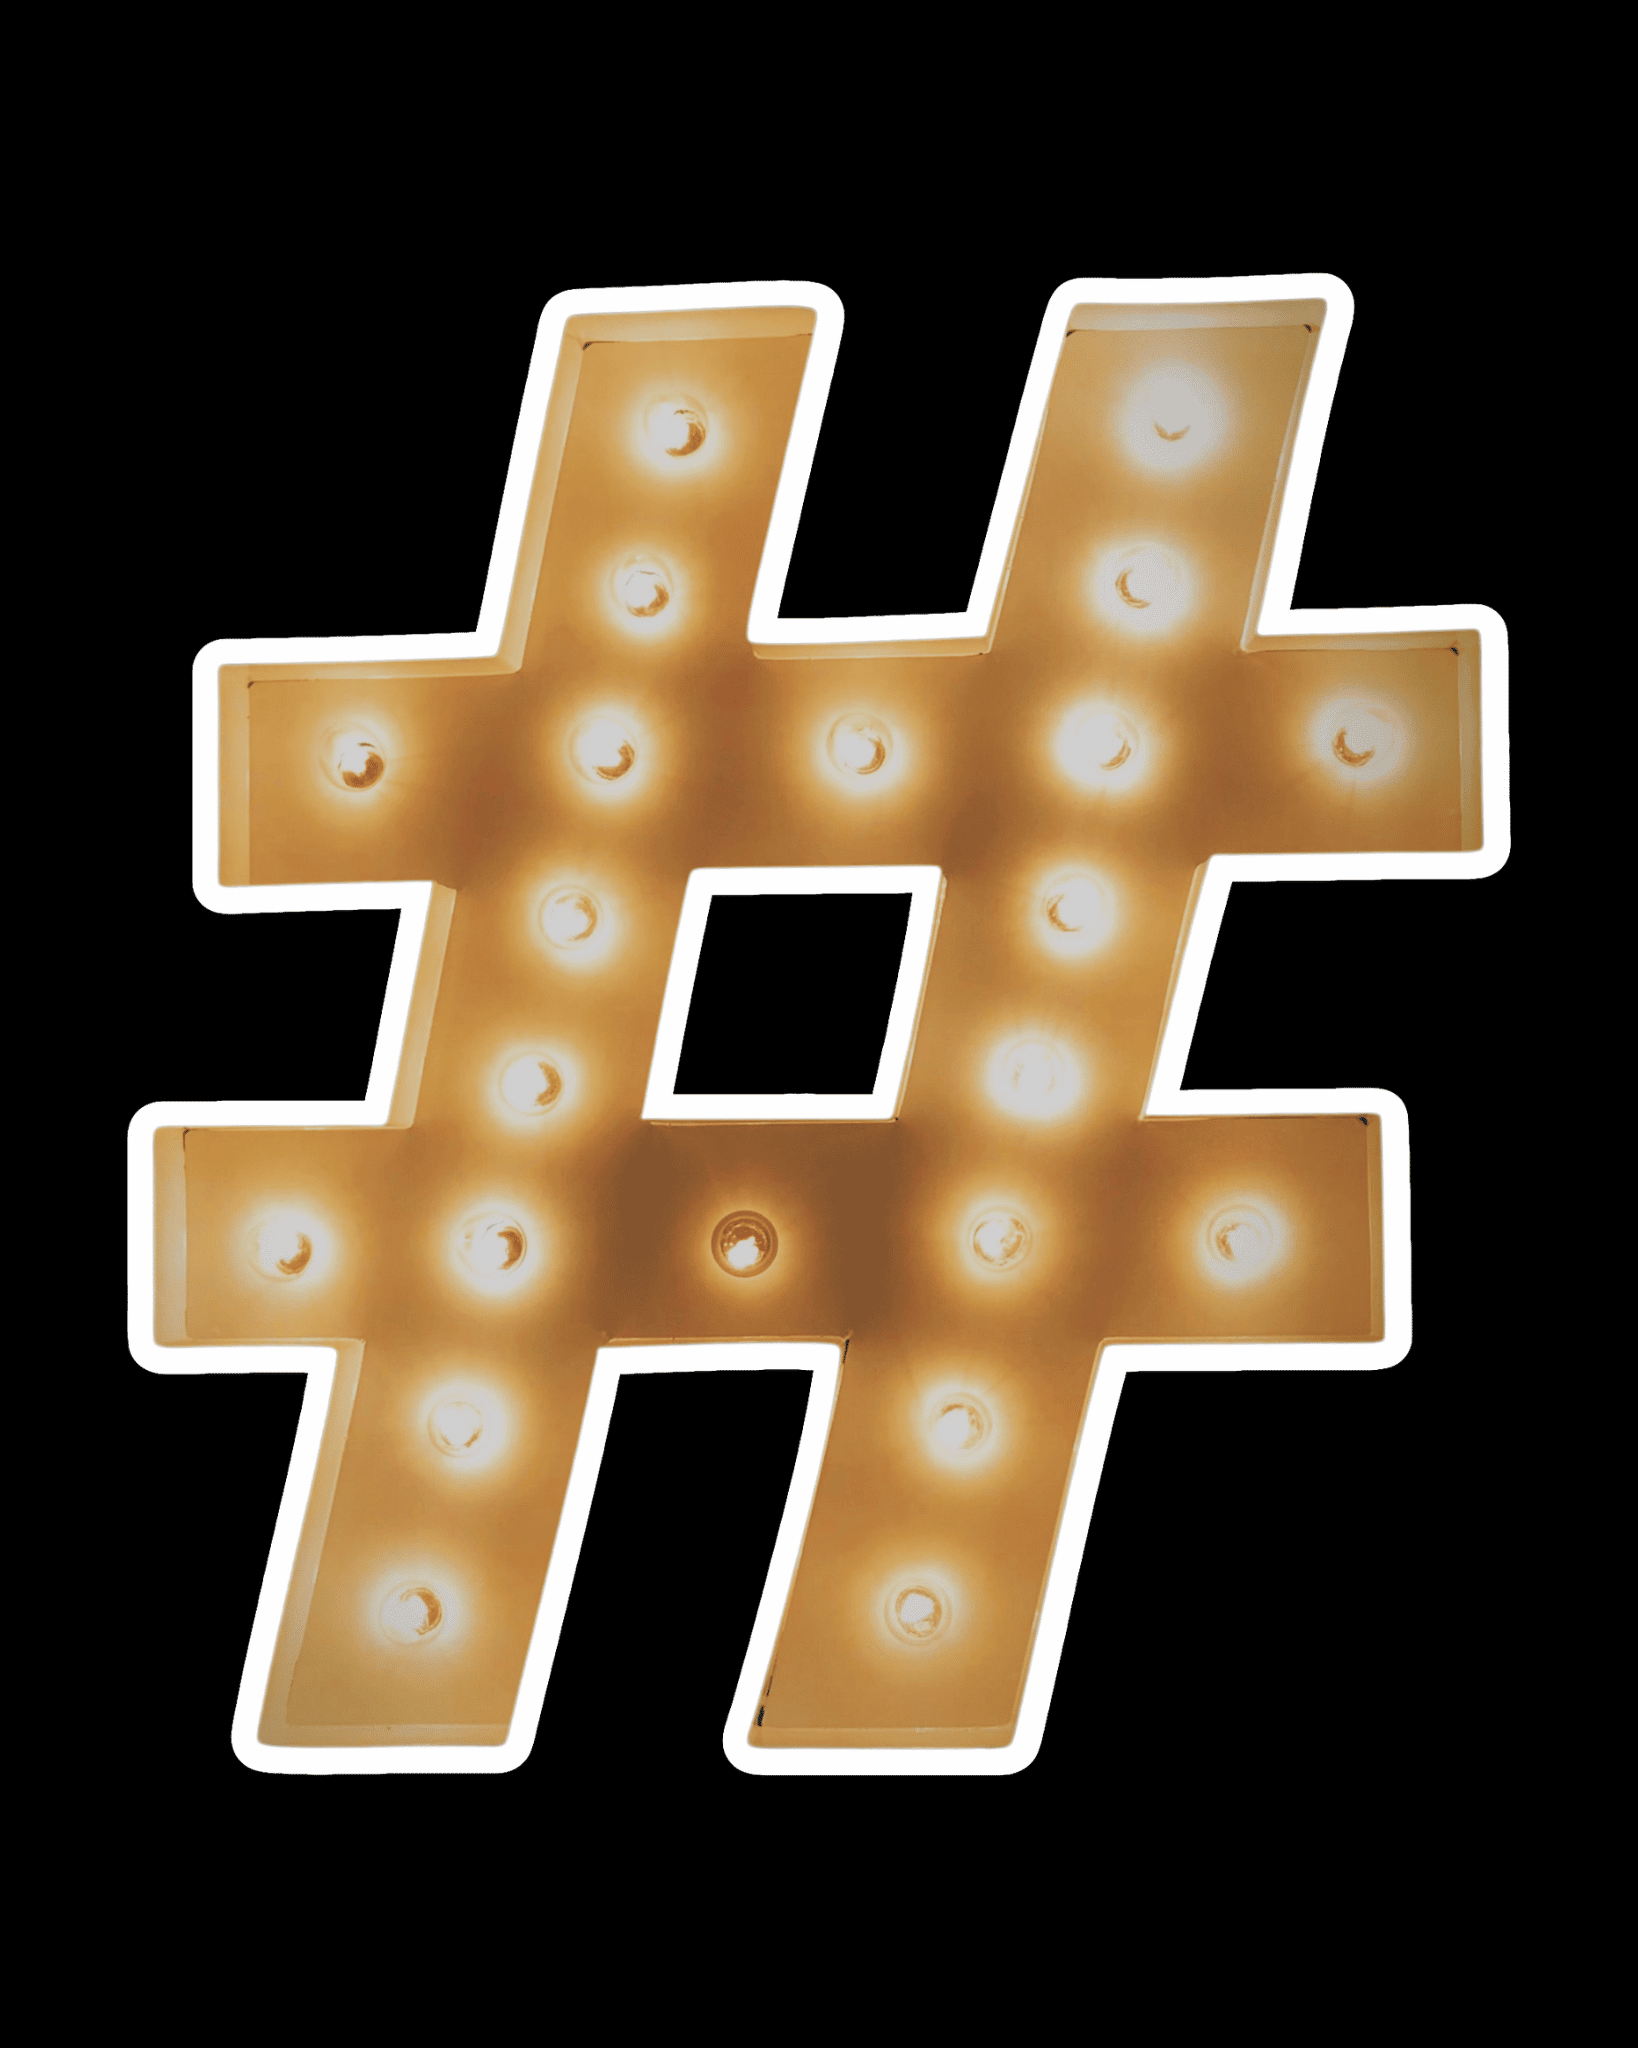 Bild eines Hashtags. Ein Zeichen das in sozialen medien genutzt wird um Wörter zu bestimmten Themen zu markieren.